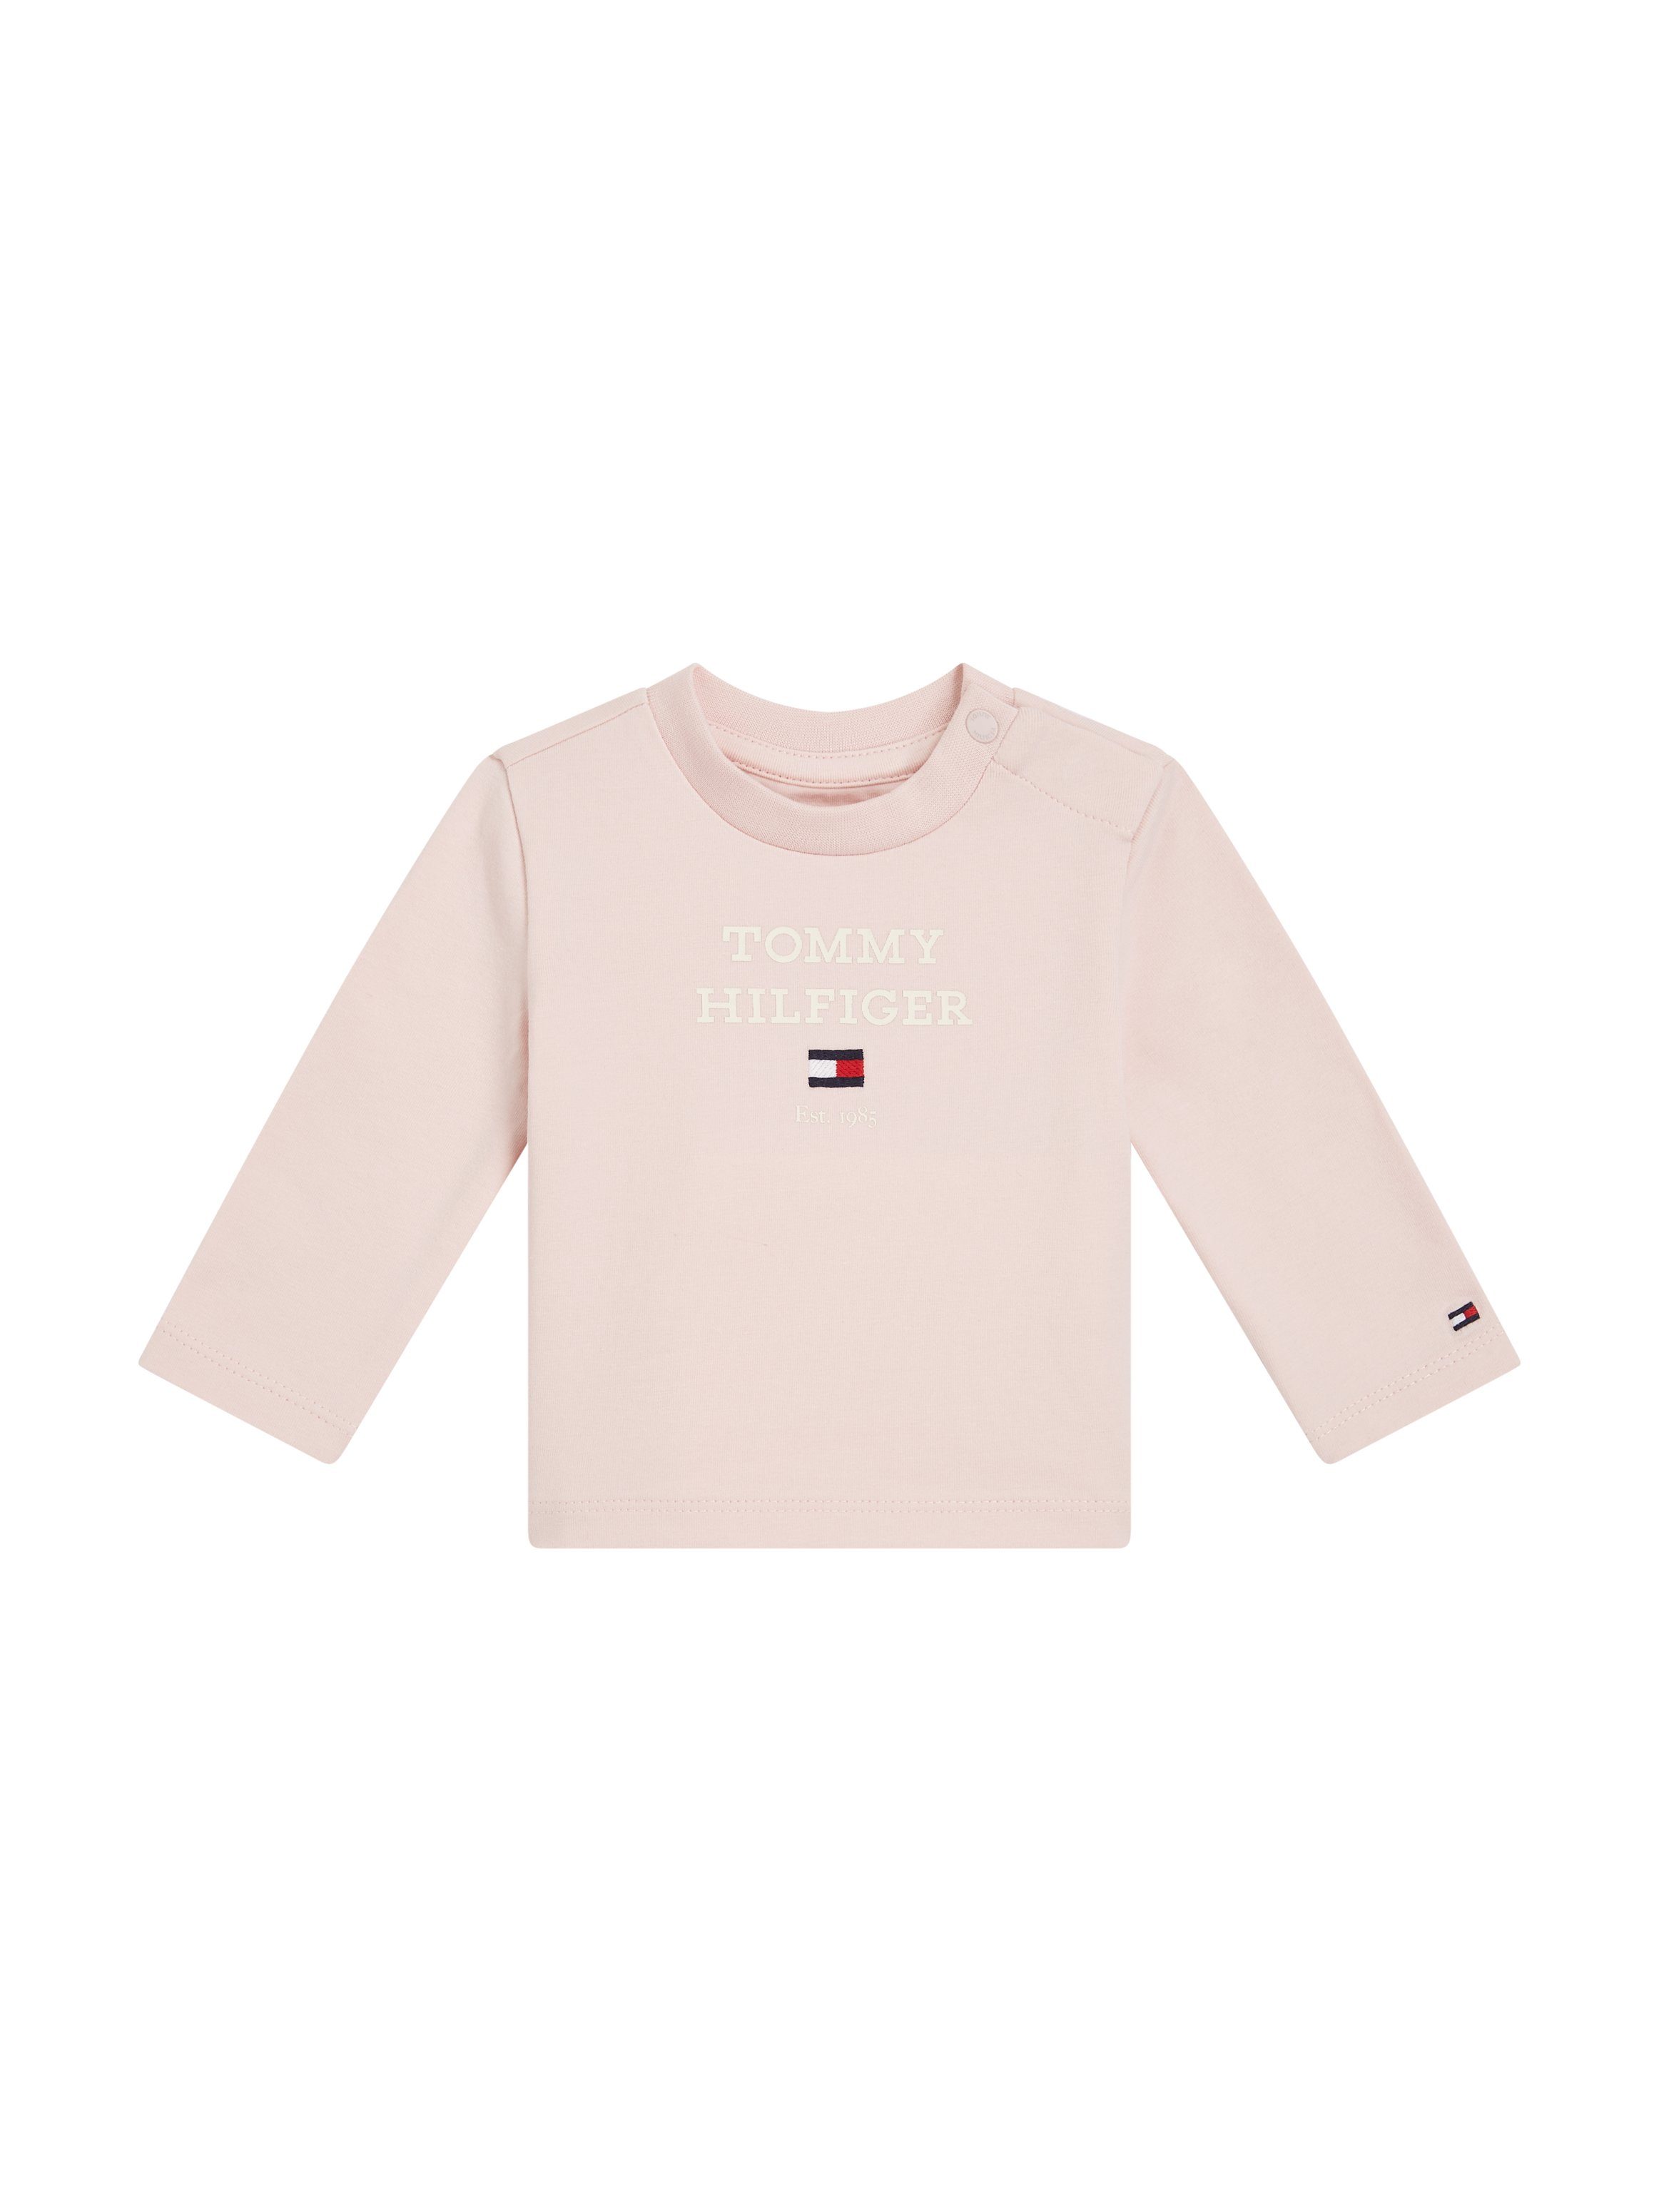 Tommy Hilfiger T-shirt met logo lichtroze Longsleeve Meisjes Stretchkatoen Ronde hals 62